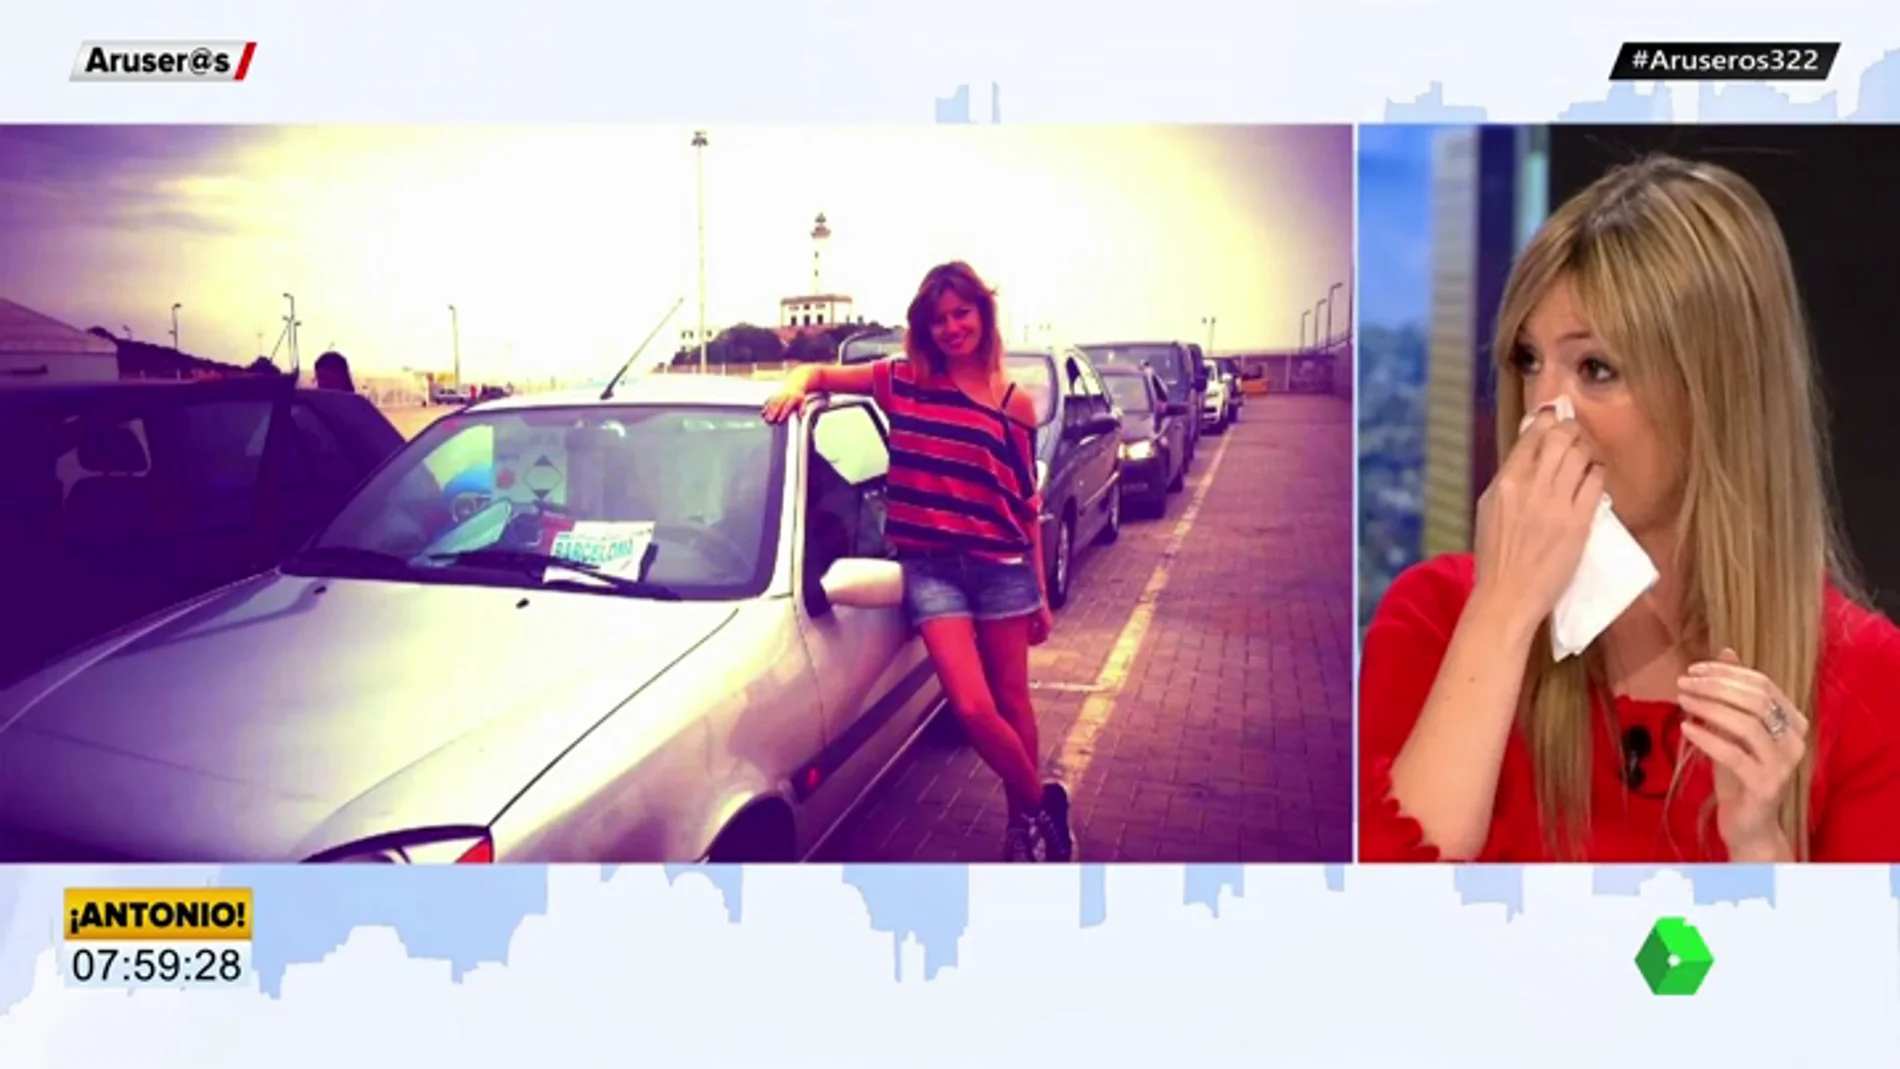 "Día triste" para Aruser@s: María Moya rota de dolor por "la muerte" de su coche